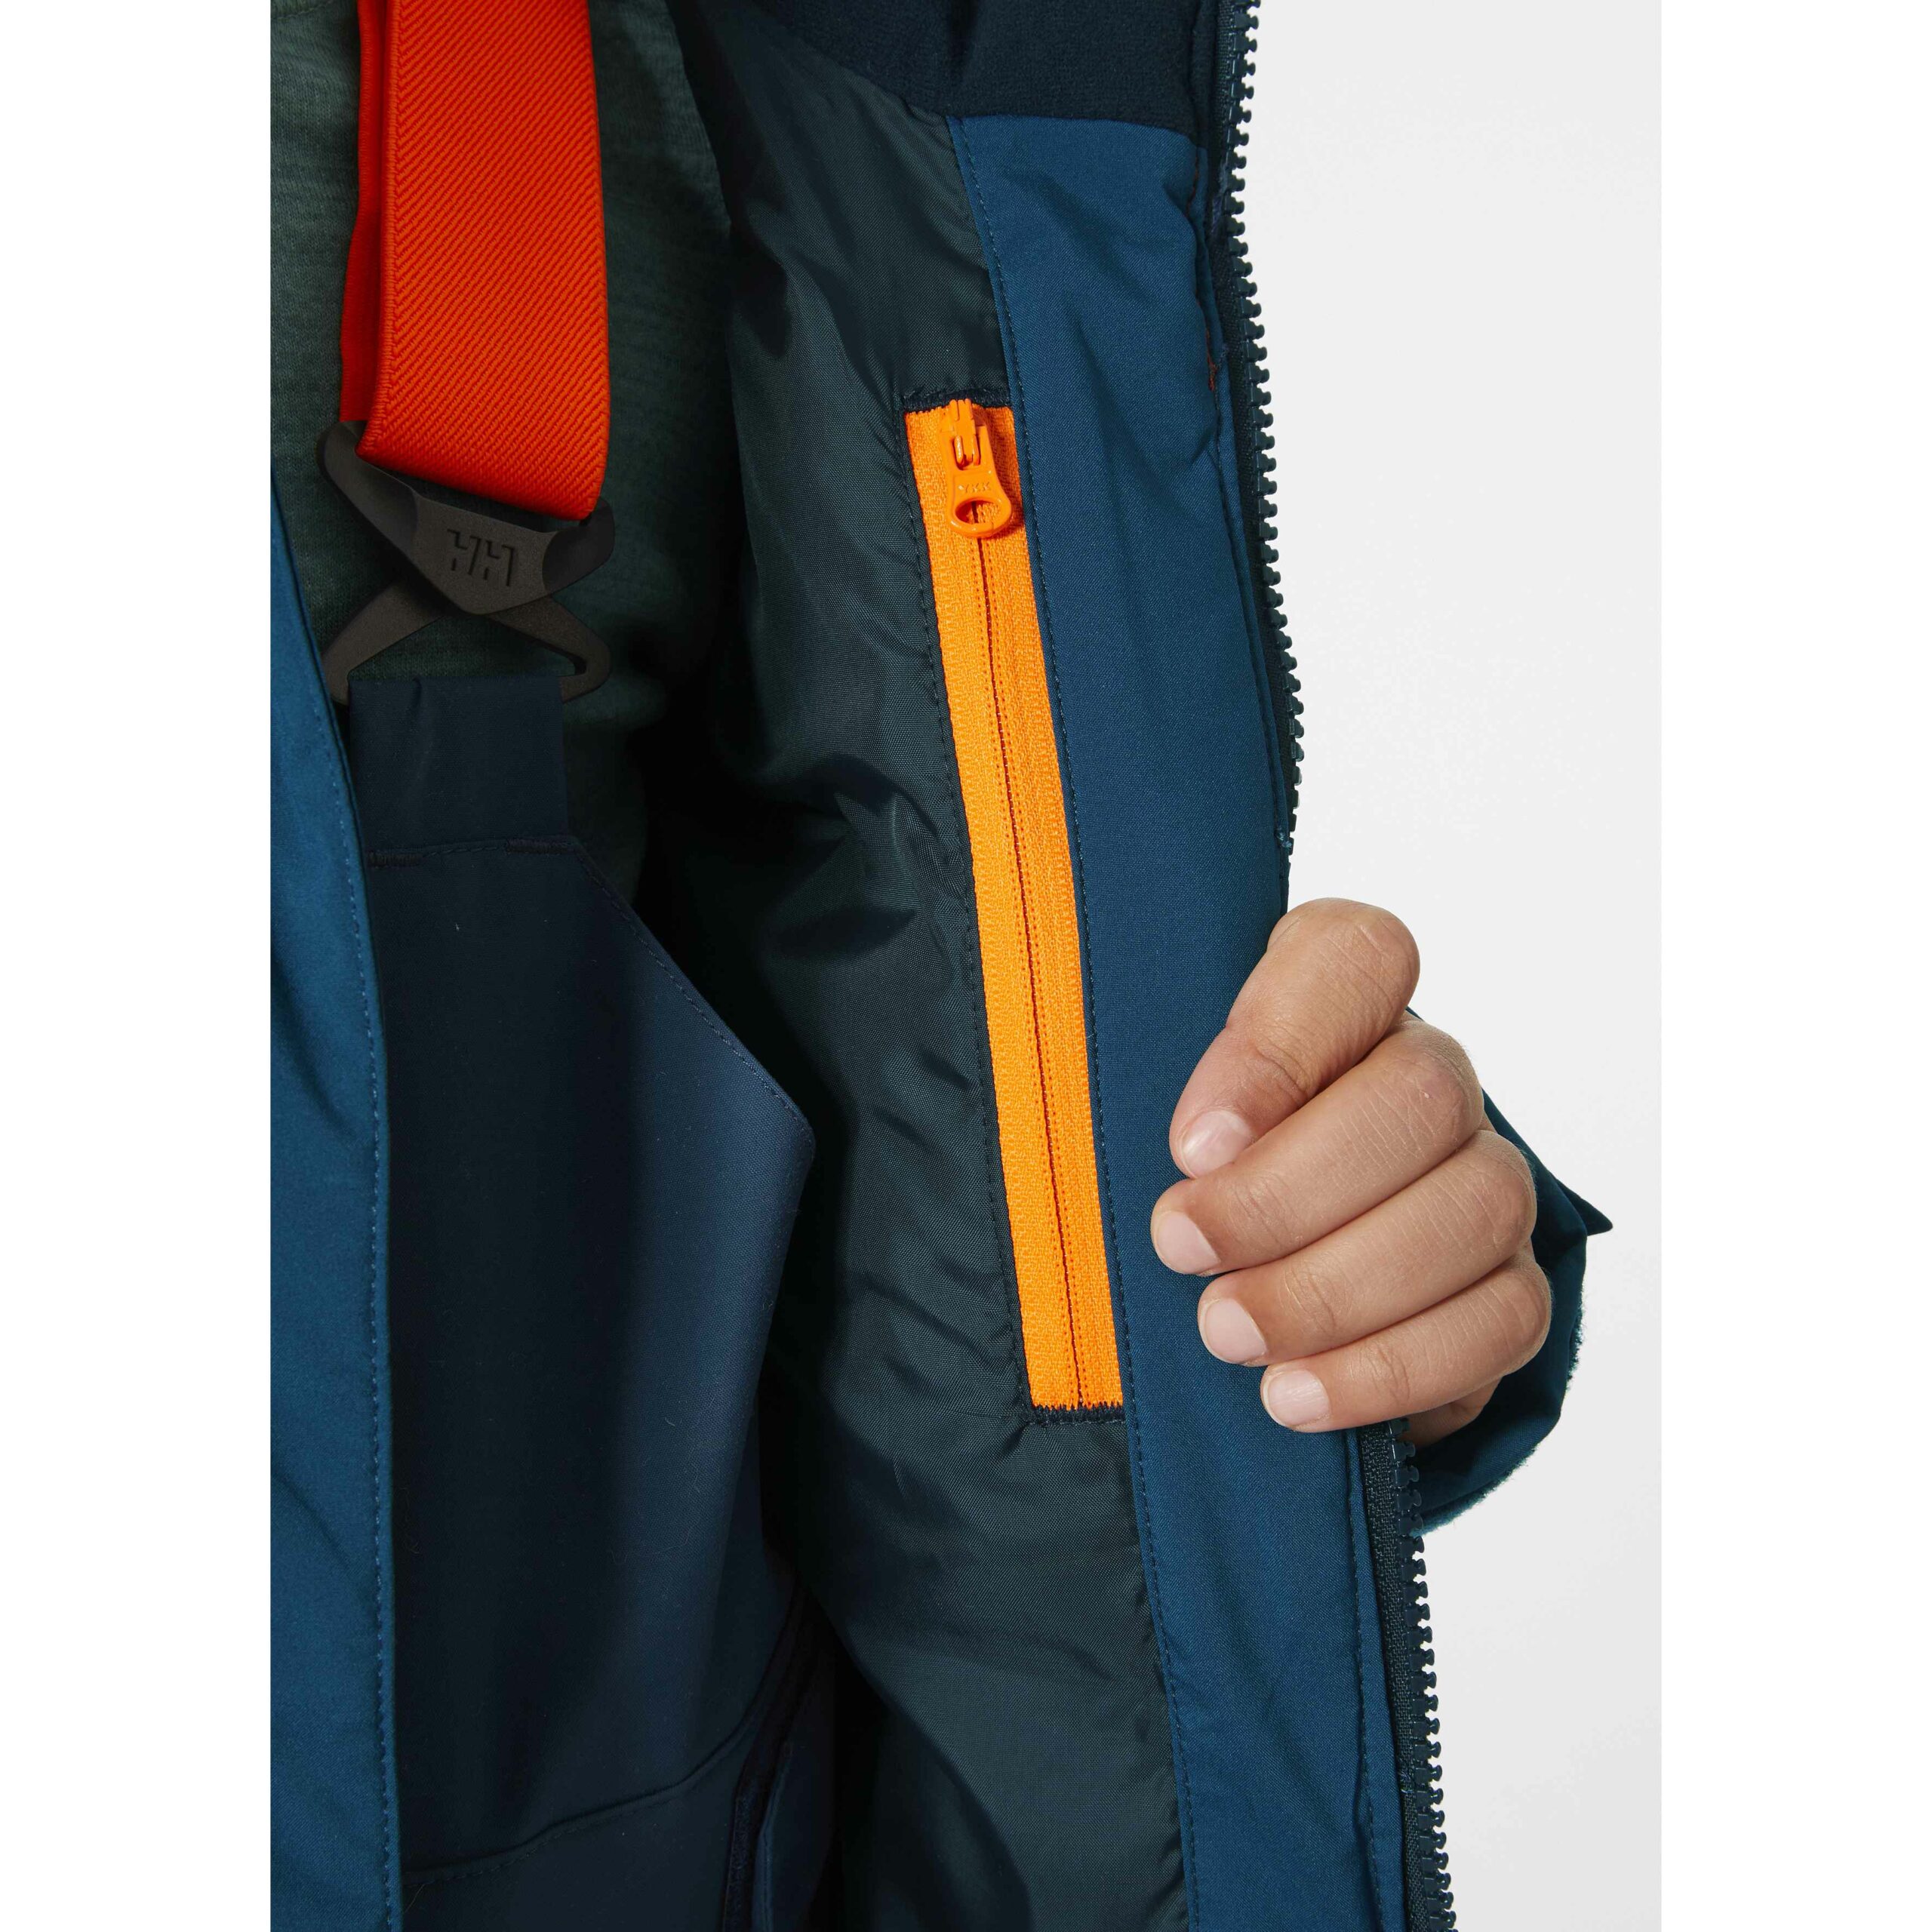 Chaqueta de esquí para niño Helly Hansen Jr Cyclone Jacket 41689-543